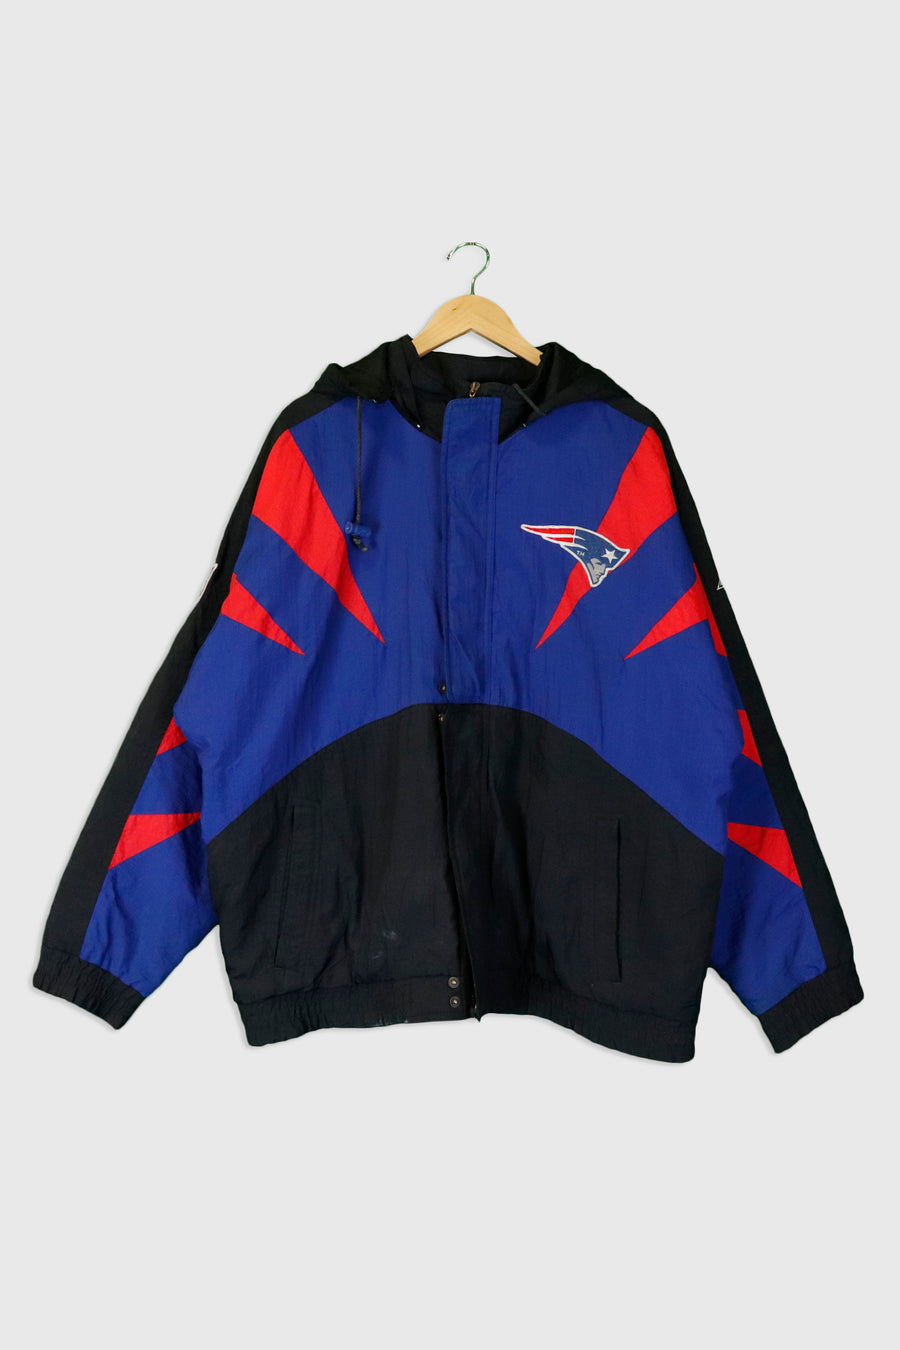 Vintage Pro Line NFL New England Patriots Multi Colour Full Zip Winter Jacket Sz L